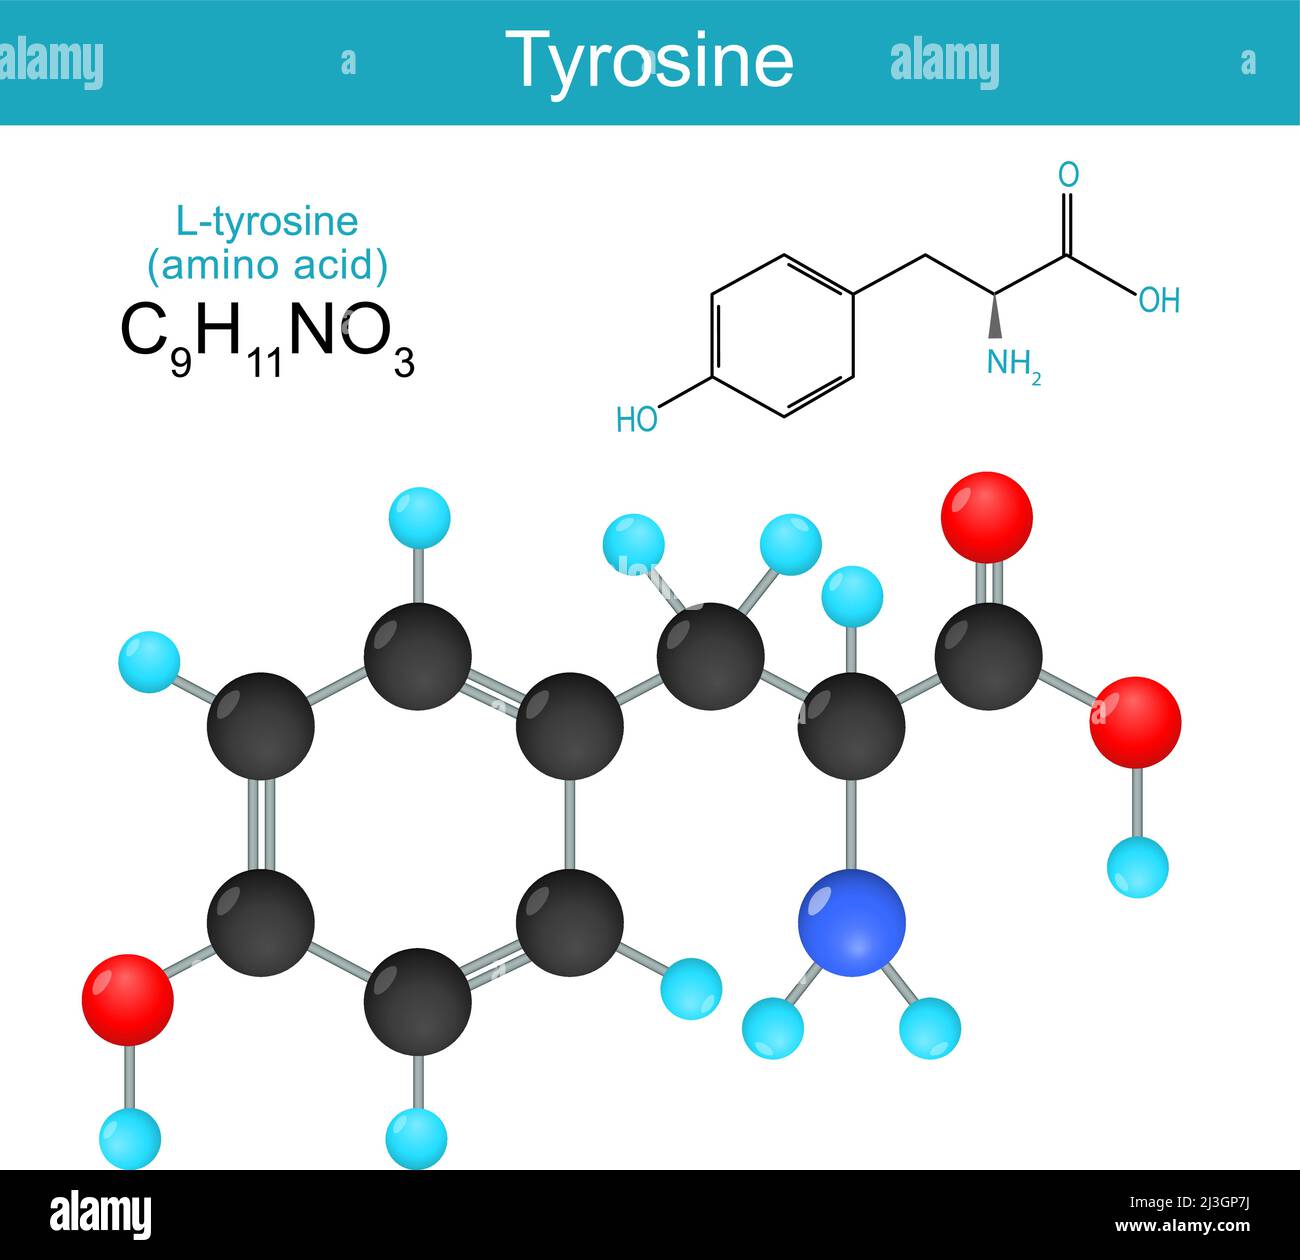 tyrosine. Formule chimique structurale d'une L-tyrosine. Formule squelettique d'un acide aminé standard. Alkaptonurie. Illustration vectorielle Illustration de Vecteur